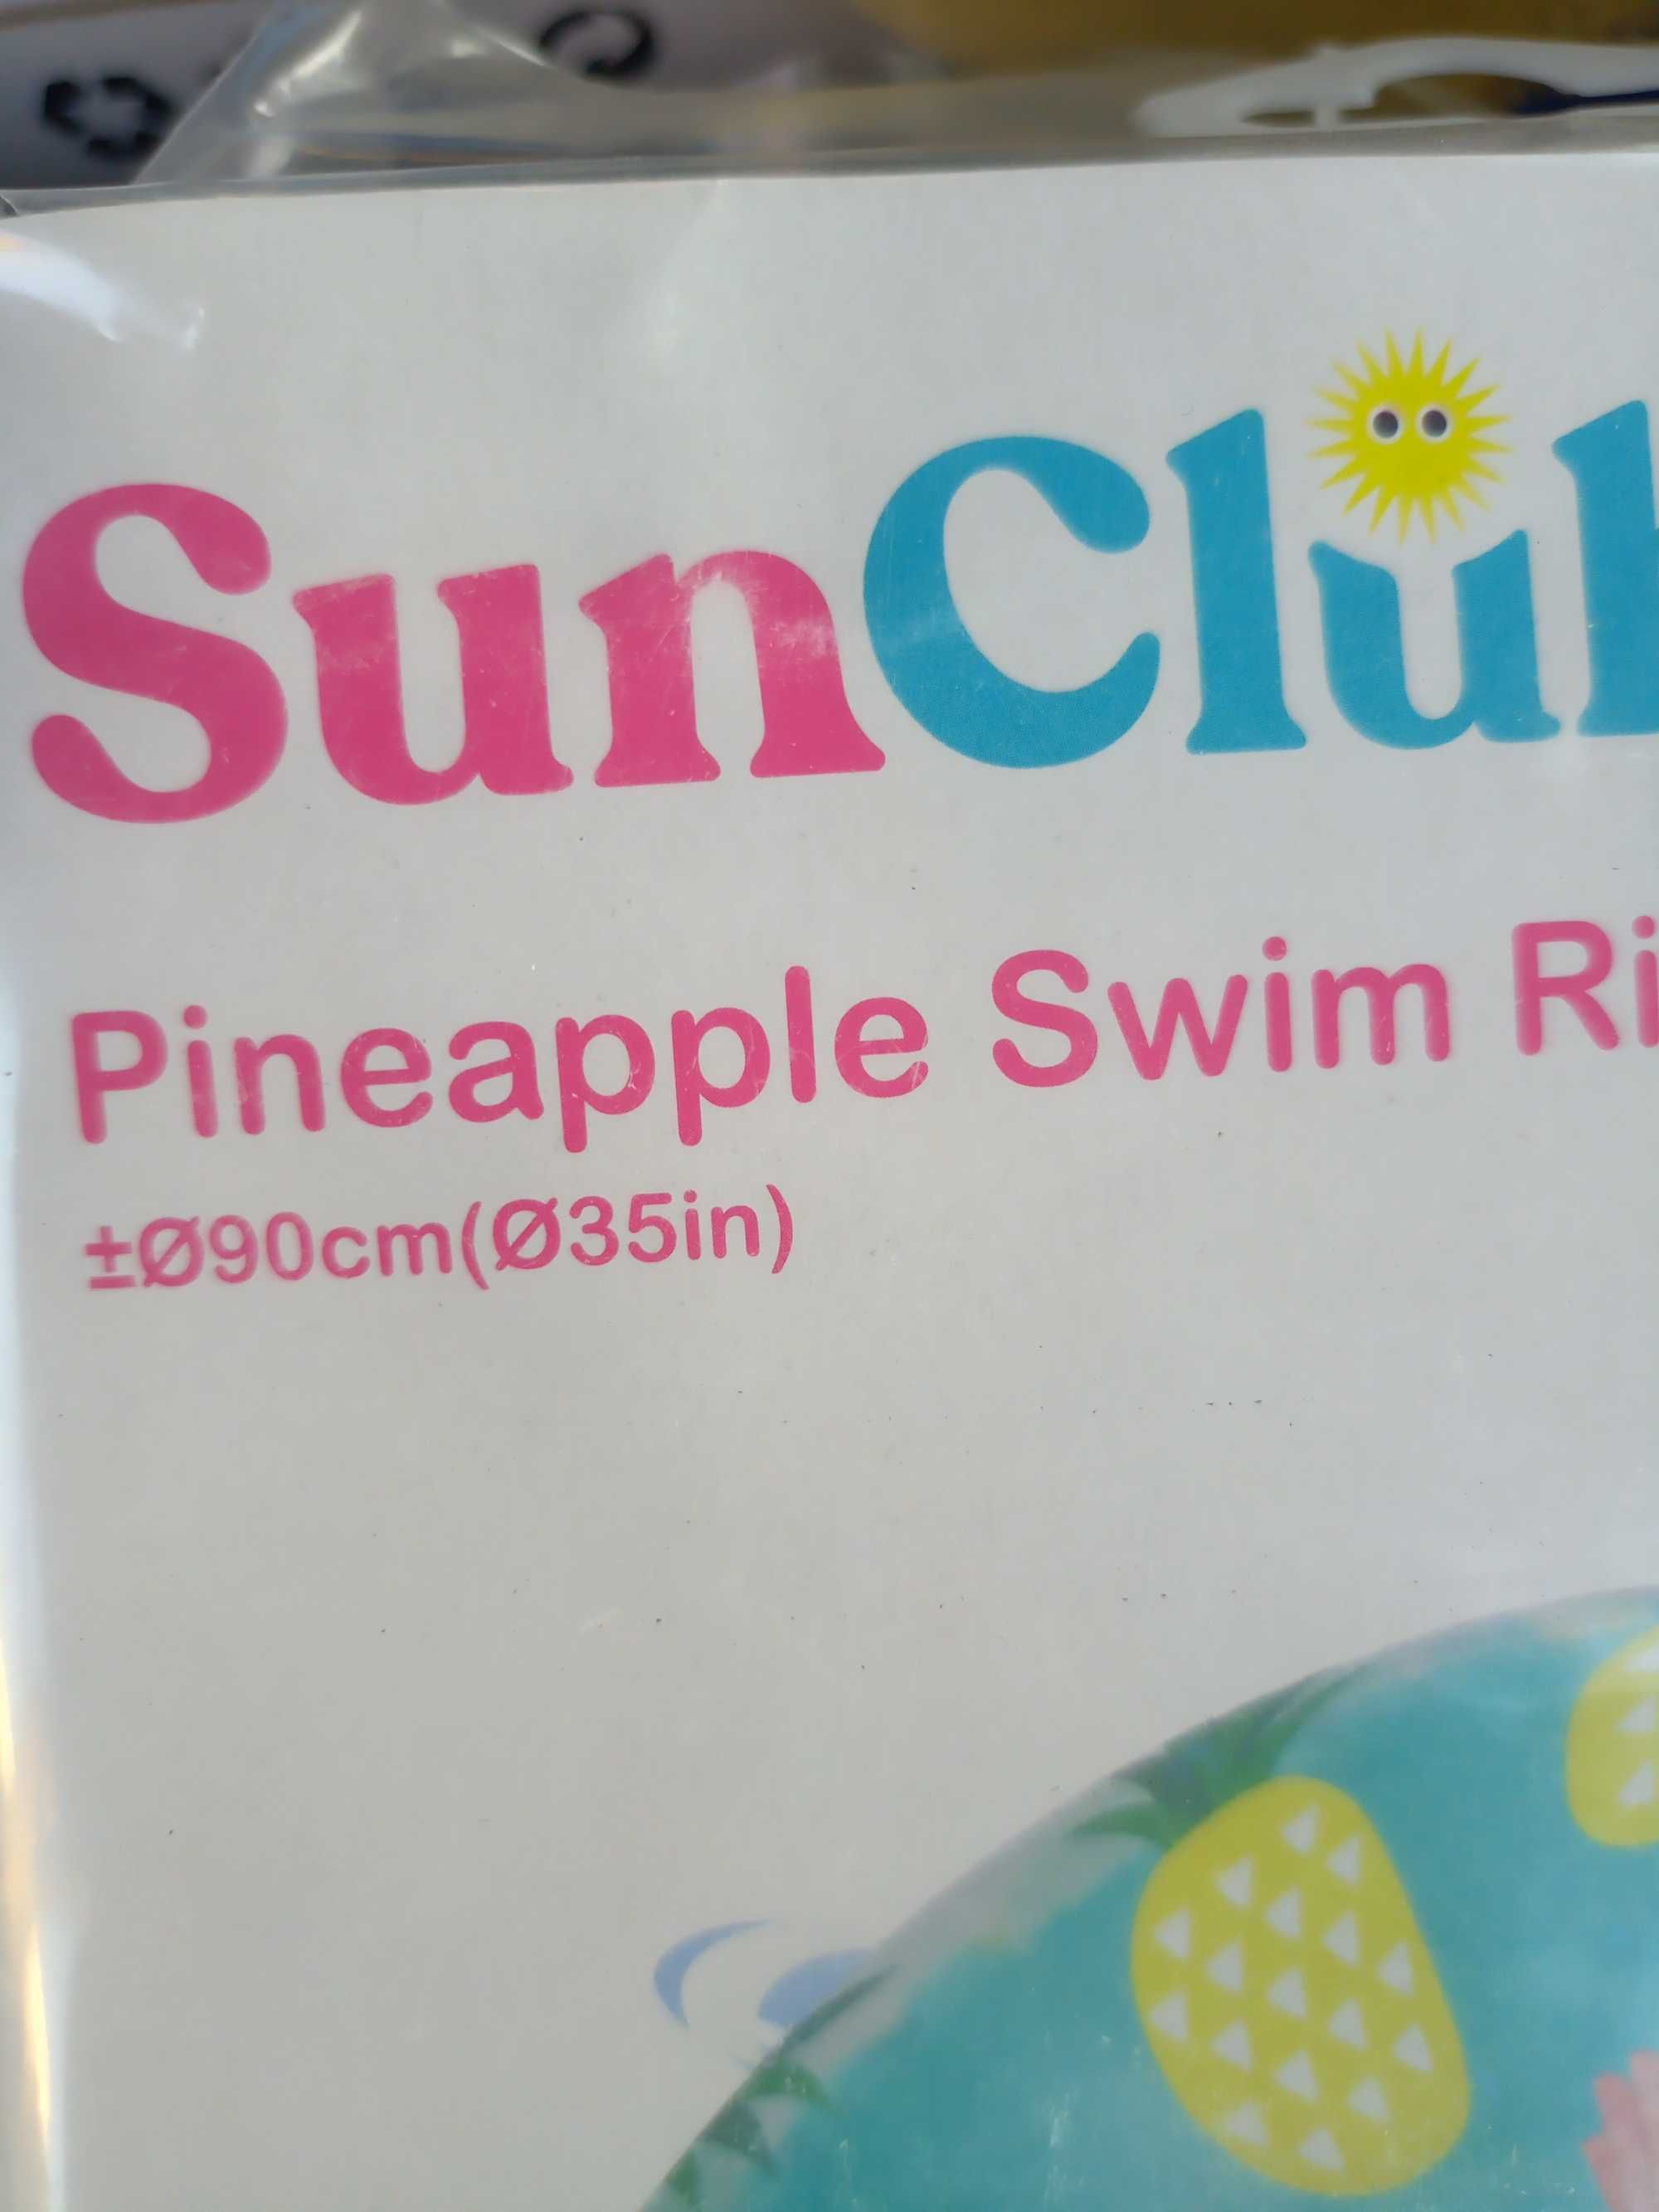 nowe kolo dmuchane do plywania dla dzieci  wzor anans